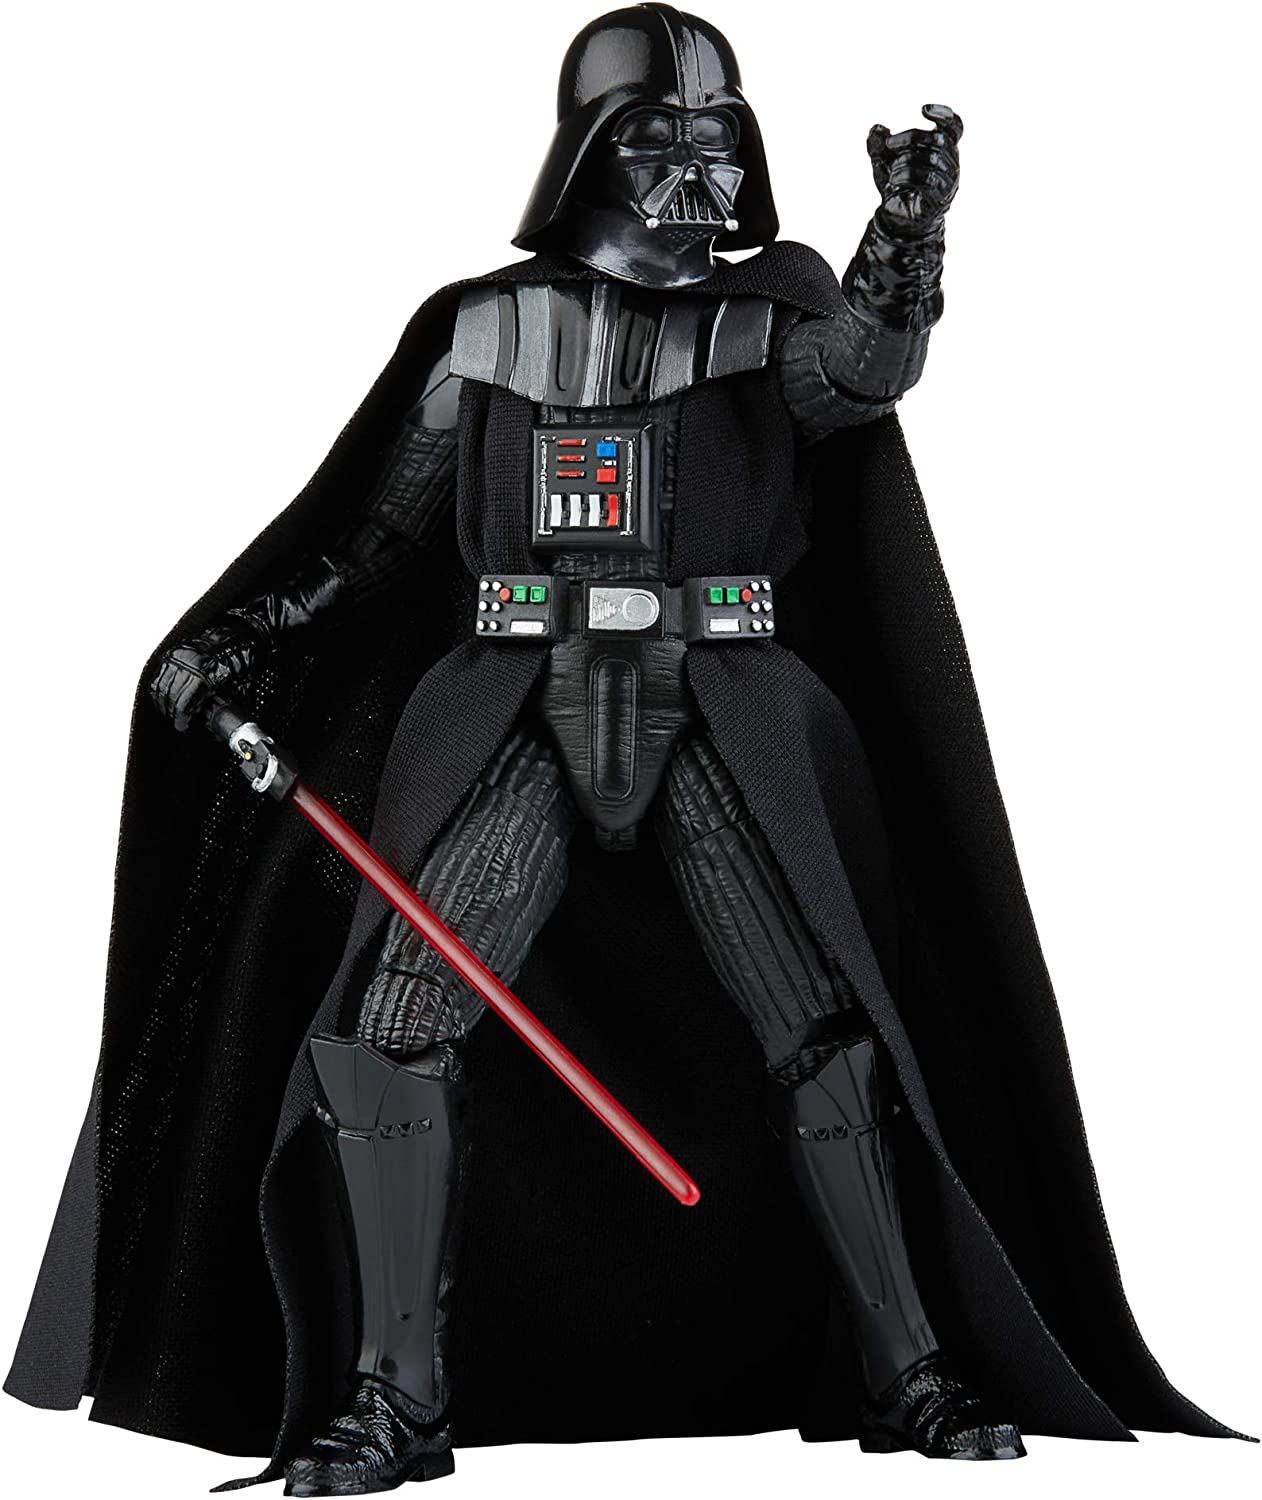 Star Wars Black 6in Black Darth Vader Action Figure